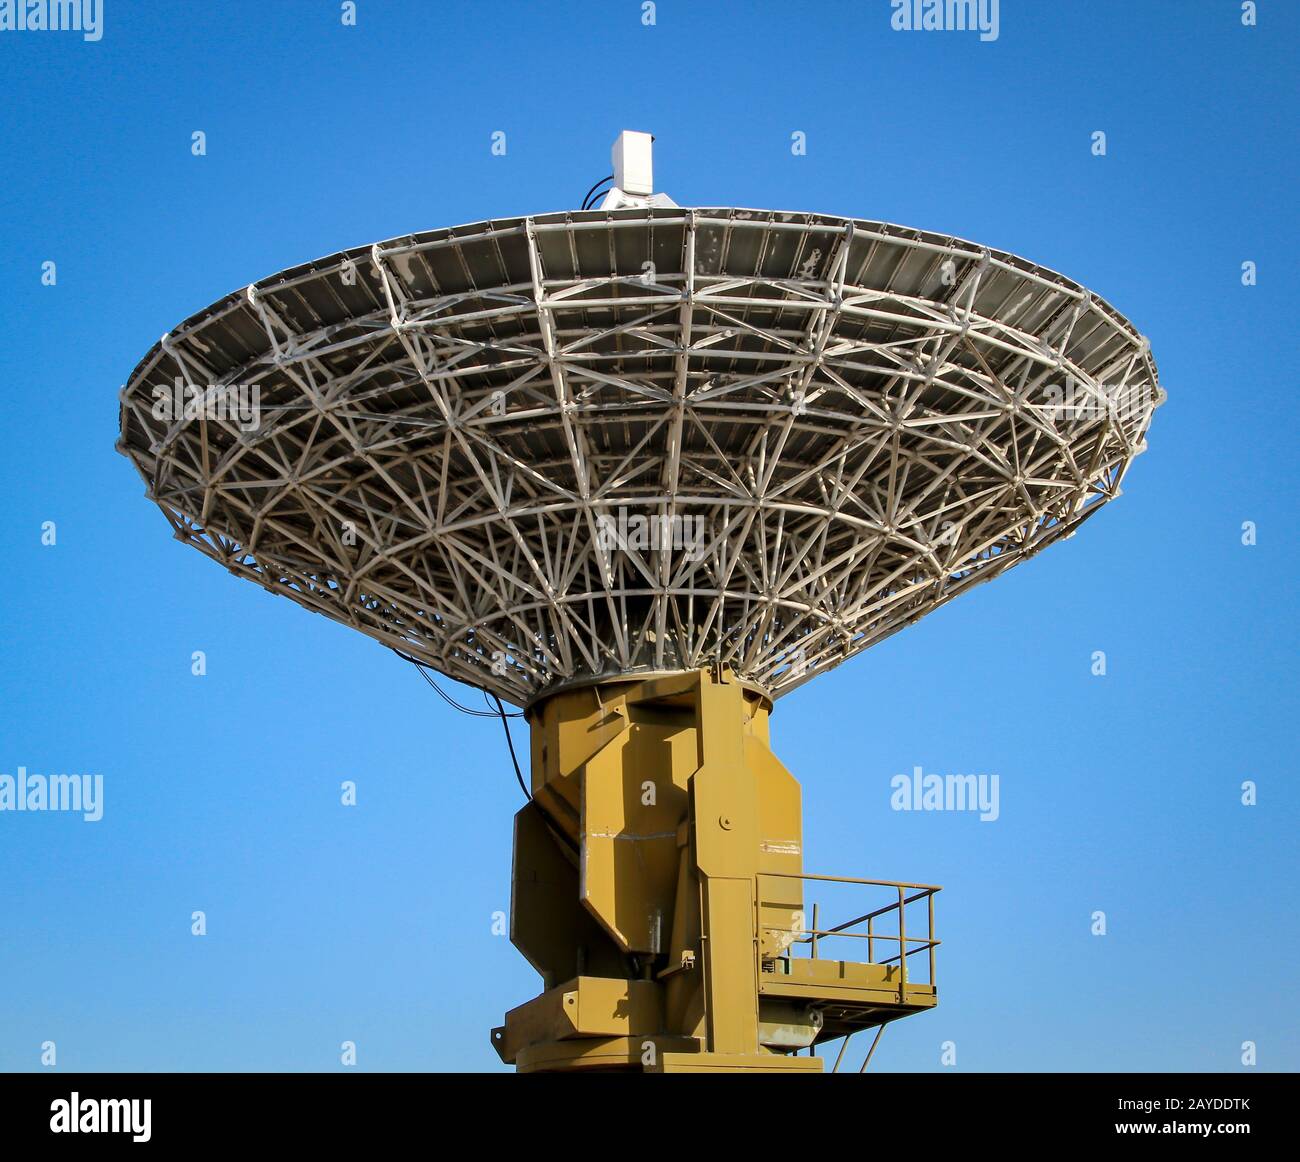 a radar dish for radio reception, air traffic control Stock Photo - Alamy